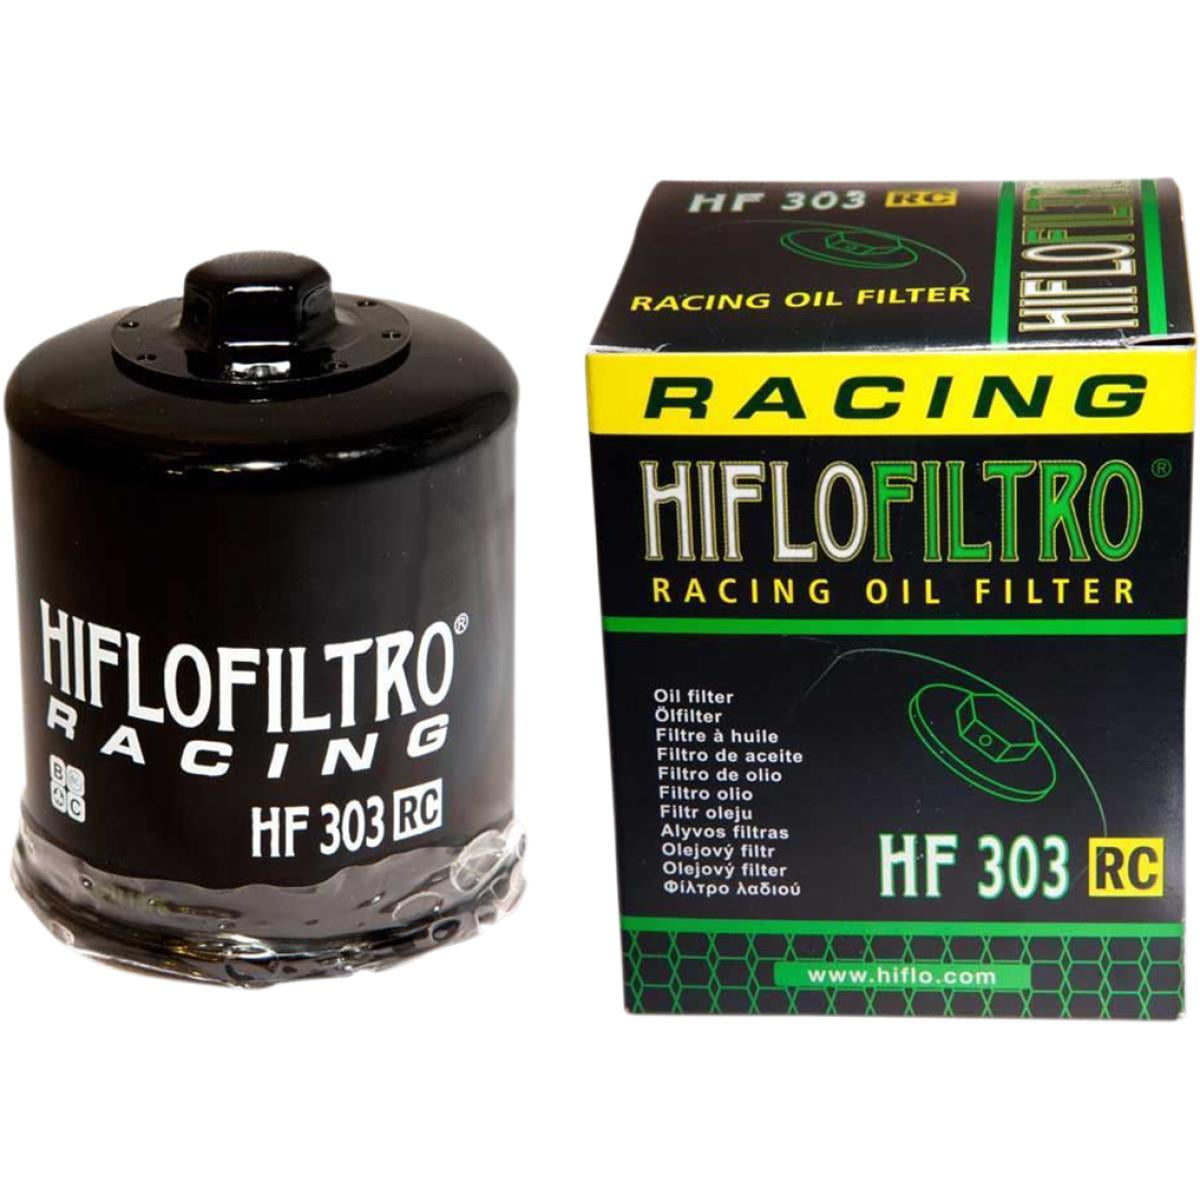 Hiflofiltro Filtre à Huile 1989 To 1998 Hf303 Honda Pc800 Pacific Coast